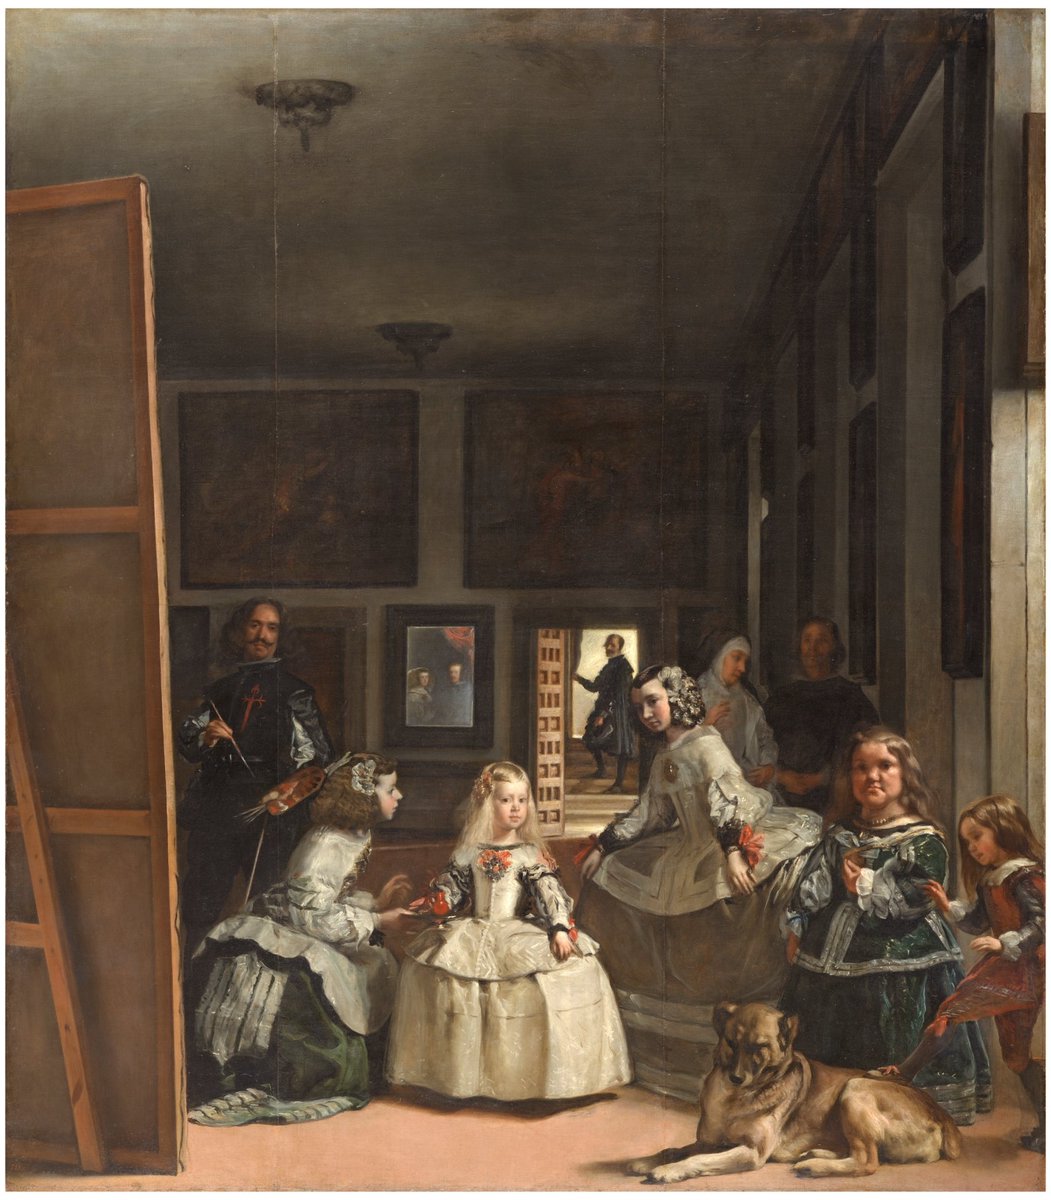 Las Meninas: Una de las obras más originales y revolucionarias de la historia el arte.

1. Cuando 1655 Diego Velázquez empezó a pintar este cuadro, no lo hizo pensando en la exposición pública que hoy tiene, sino para deleite y contemplación privada. La obra estaba destinada ⤵️